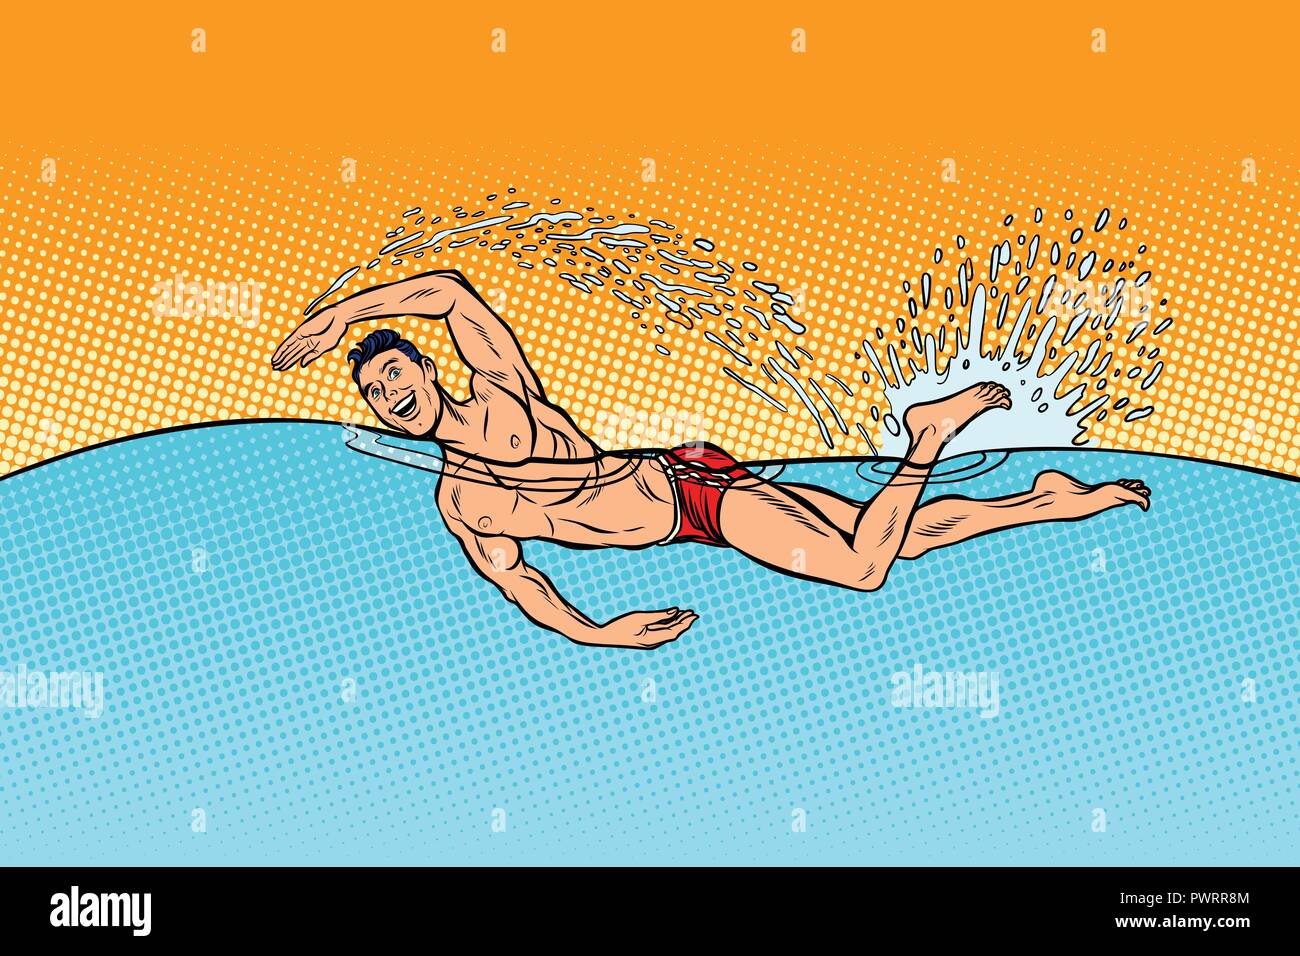 L'homme nage nageur Illustration de Vecteur